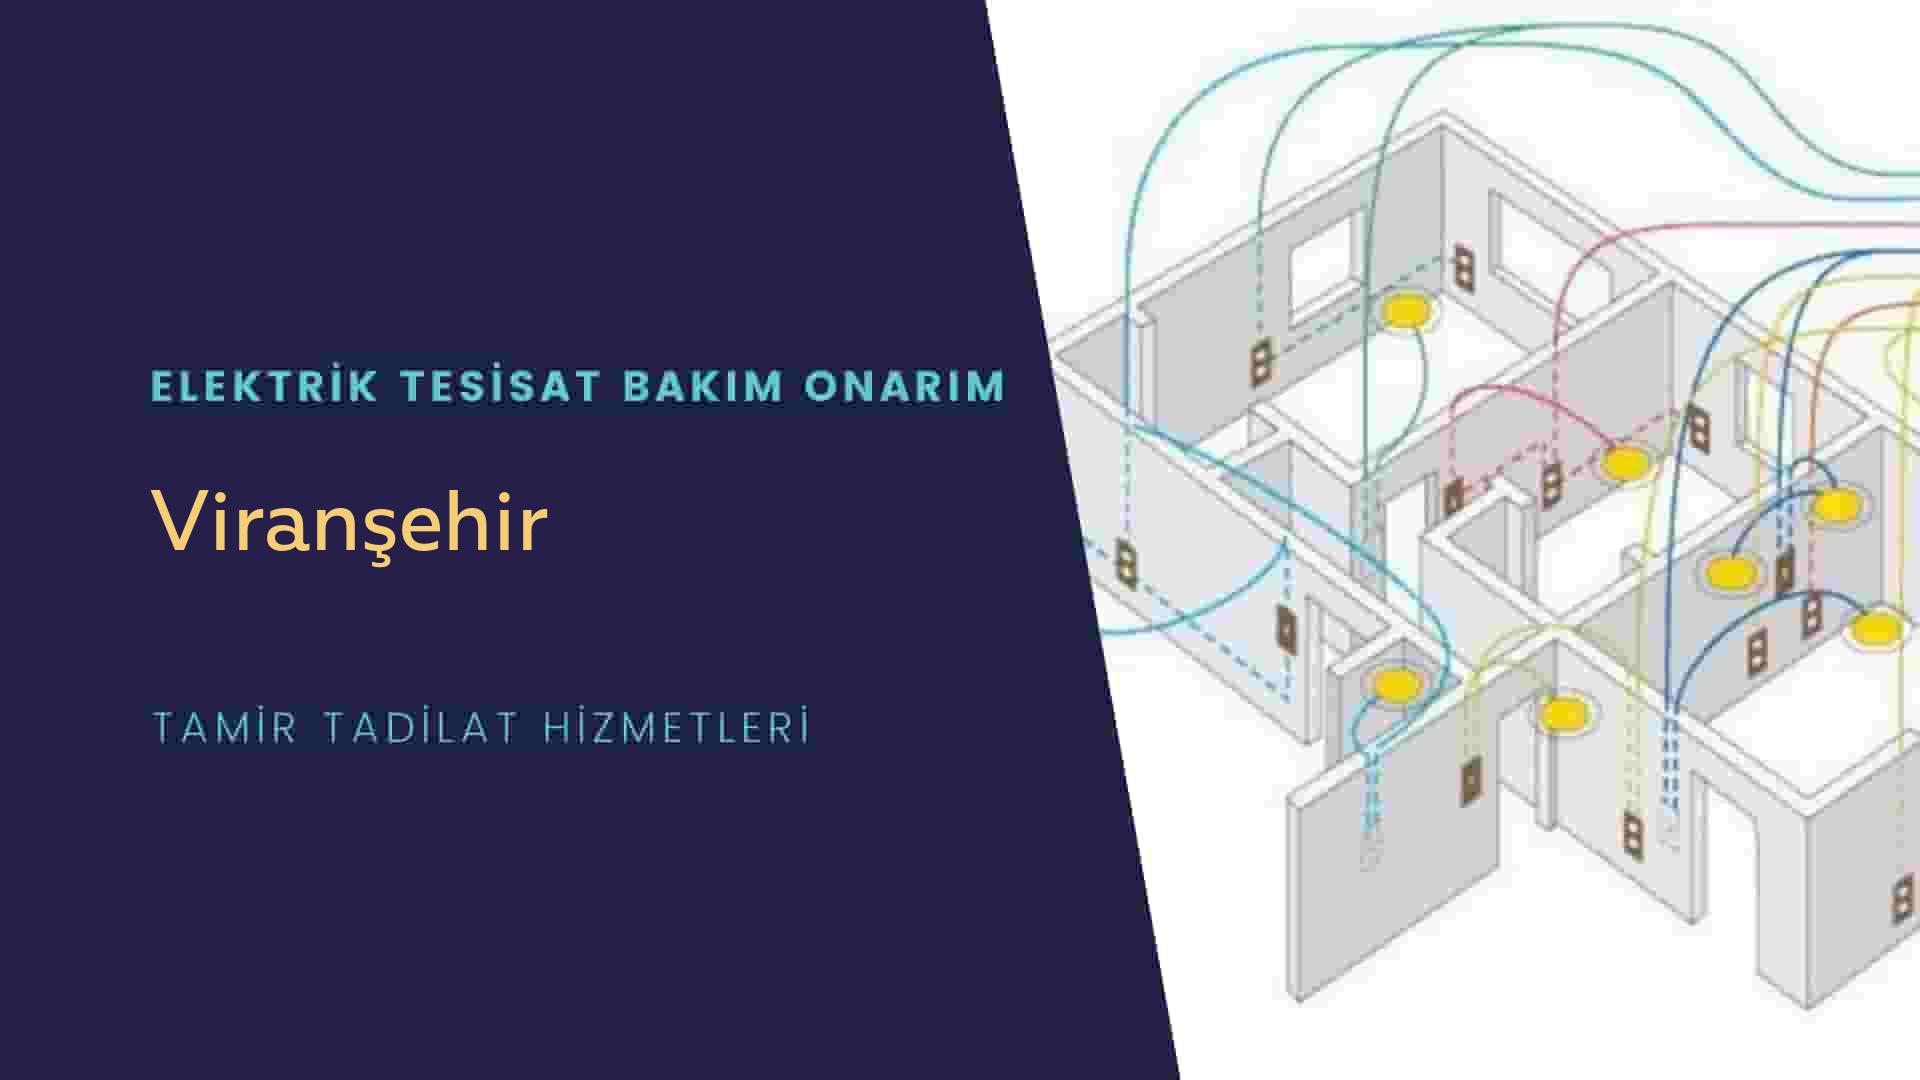 Viranşehir'de elektrik tesisatı ustalarımı arıyorsunuz doğru adrestenizi Viranşehir elektrik tesisatı ustalarımız 7/24 sizlere hizmet vermekten mutluluk duyar.